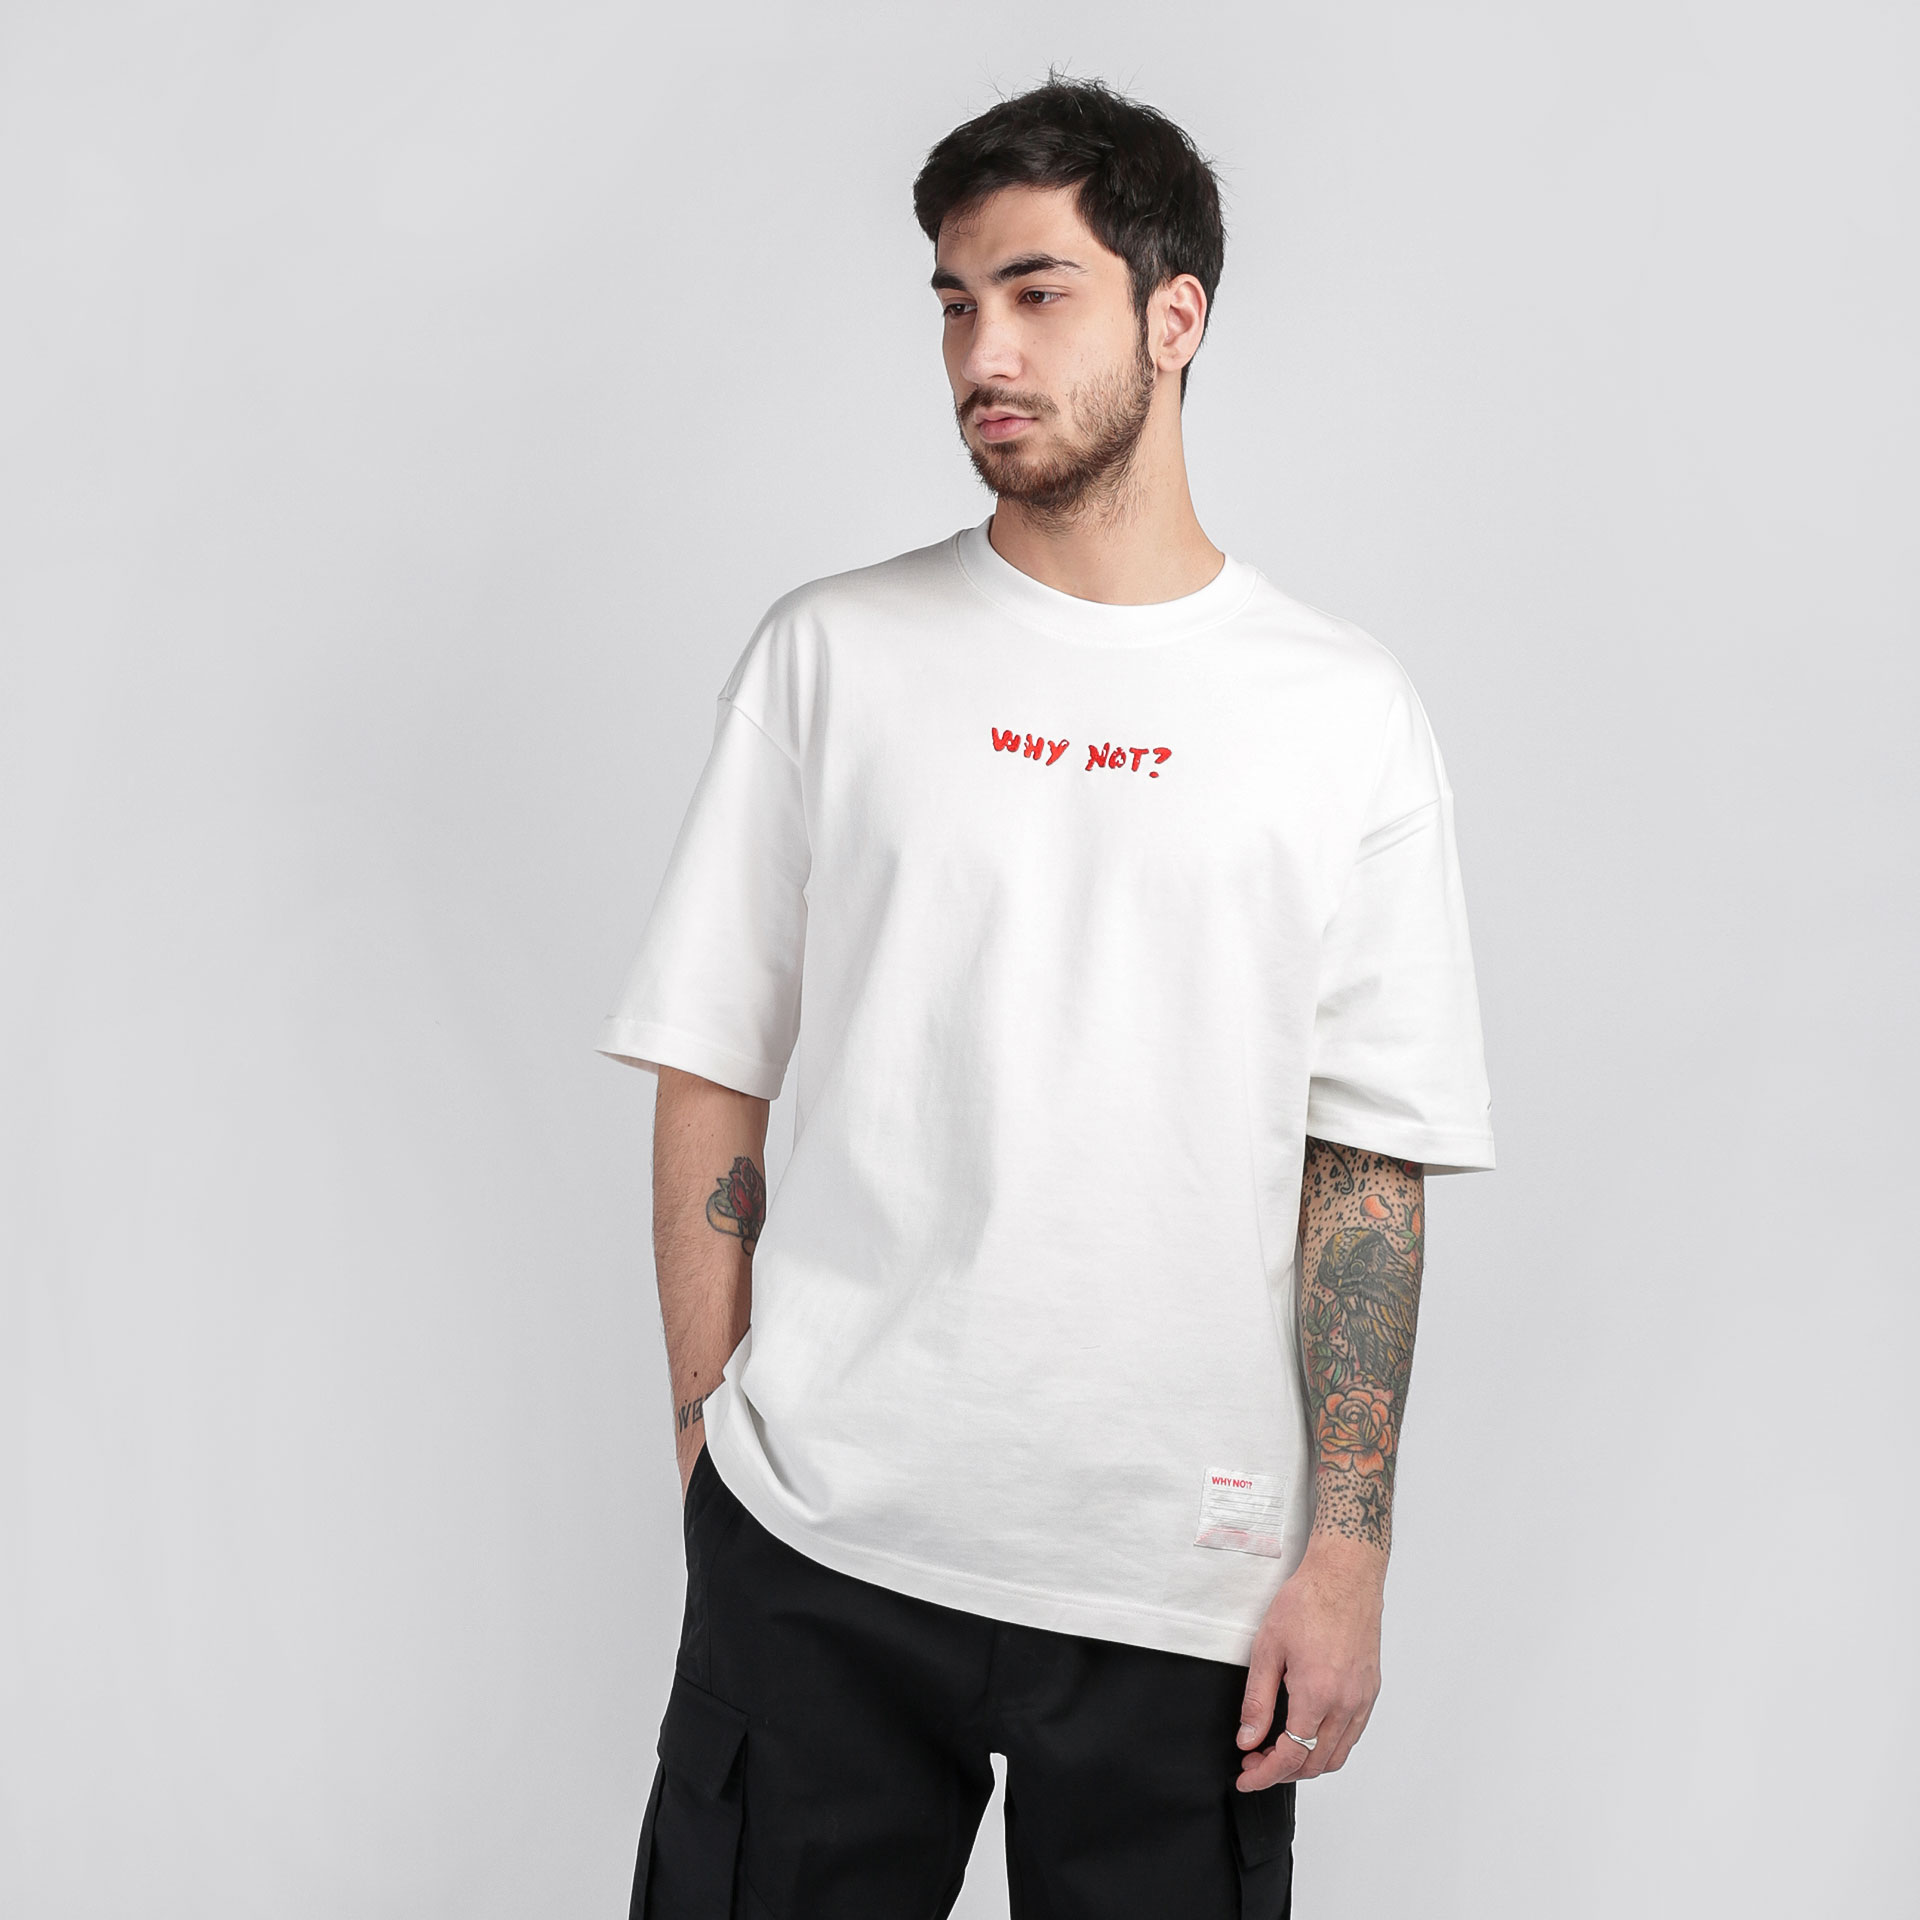 мужская белая футболка Jordan T-shirt  Why Not? CW4257-100 - цена, описание, фото 1